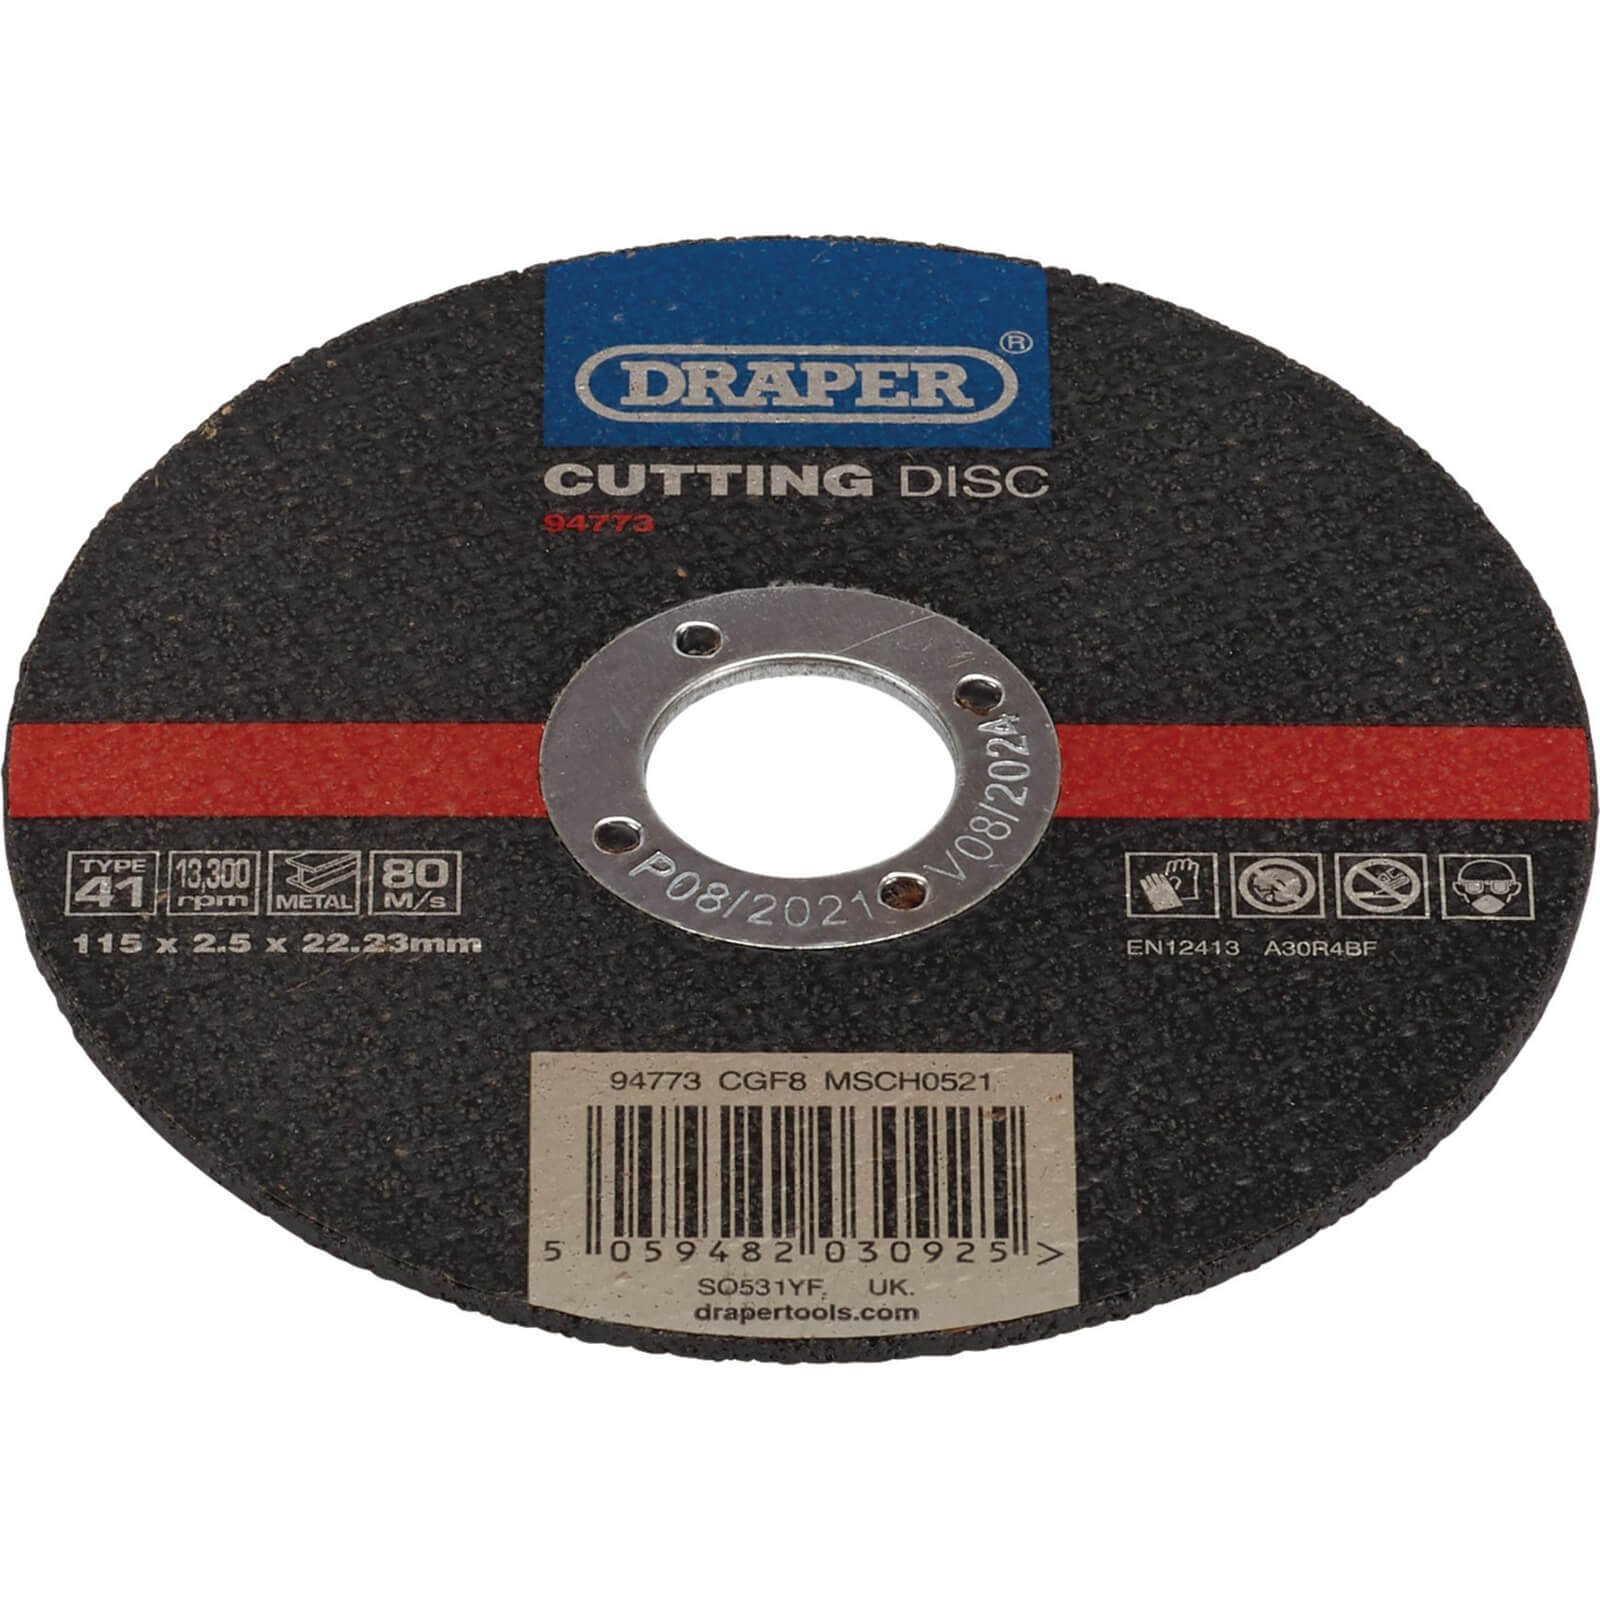 Draper Metal Cutting Disc 125mm 2.5mm 22mm